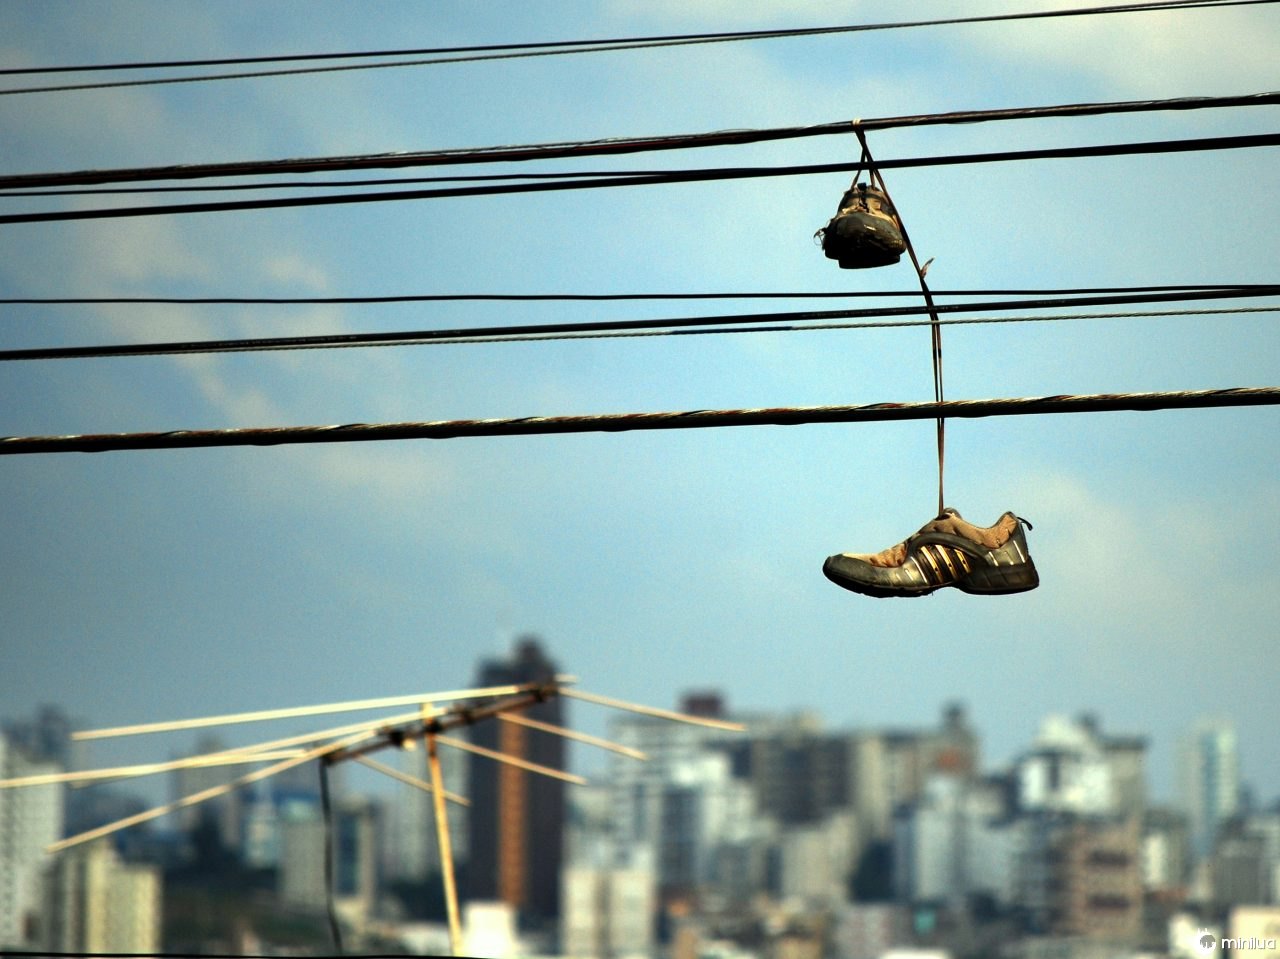  Դուք հաստատ տեսել եք մի զույգ սպորտային կոշիկներ, որոնք կախված են փողոցի լարերից, բայց ի՞նչ է դա նշանակում: